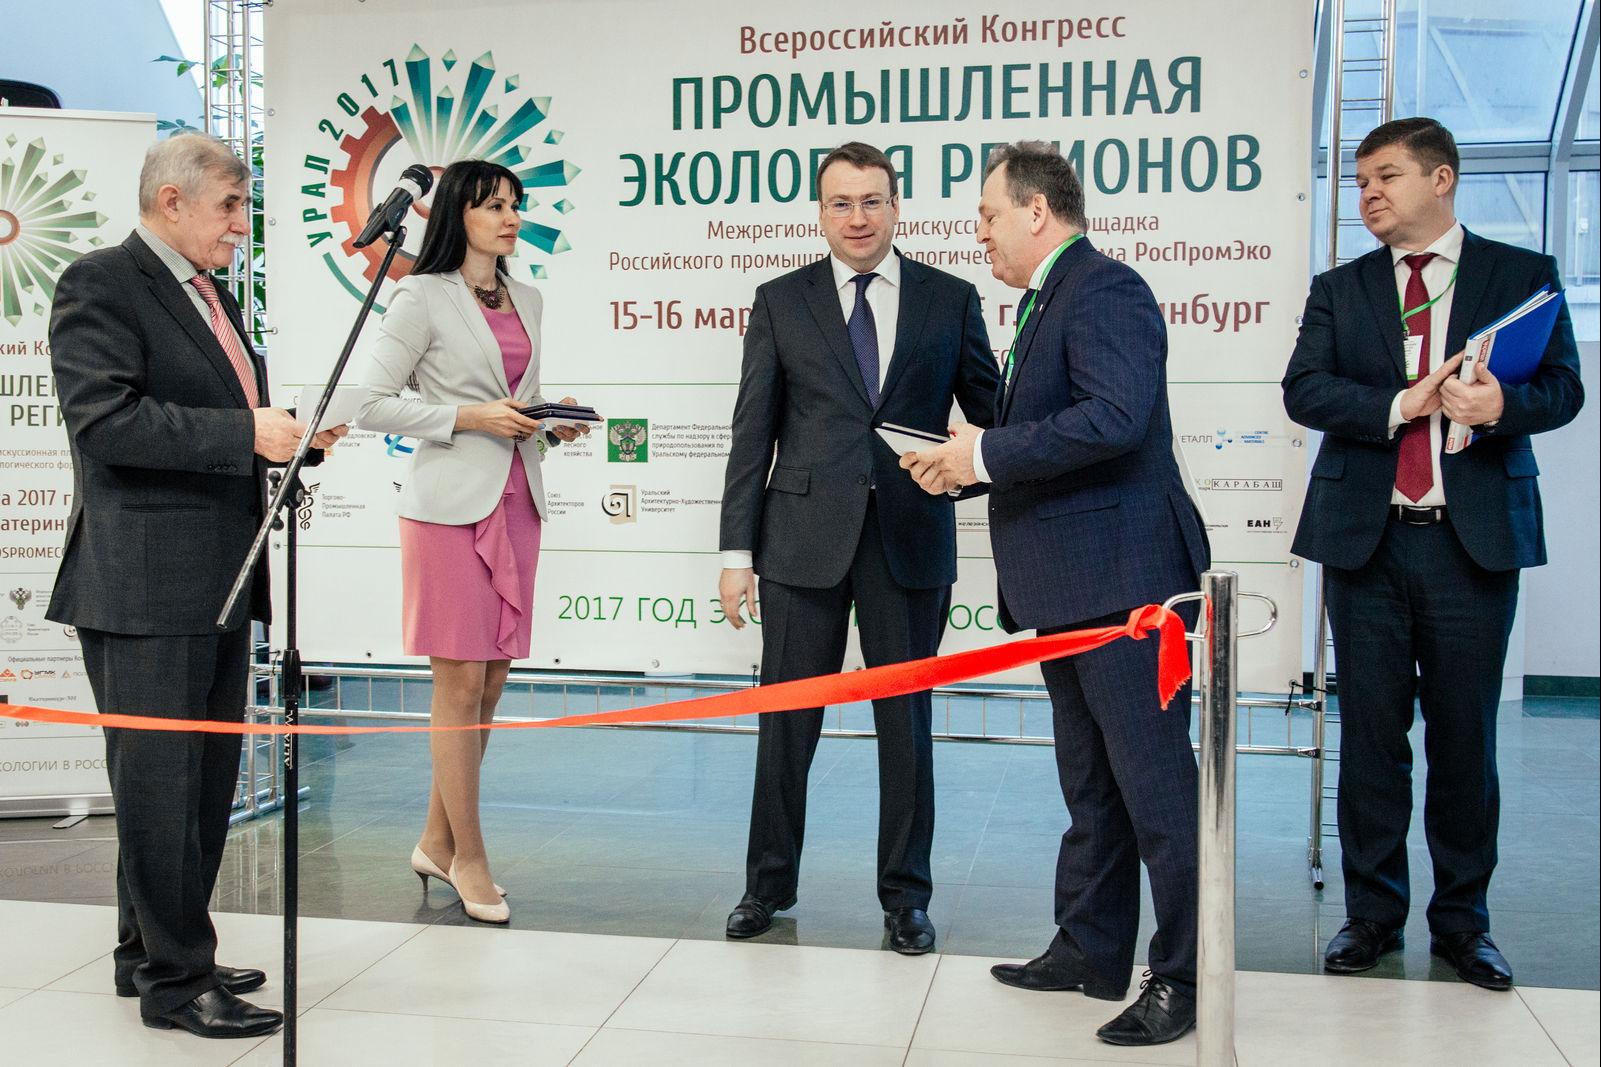 В Екатеринбурге открылся всероссийский конгресс «Промышленная экология»